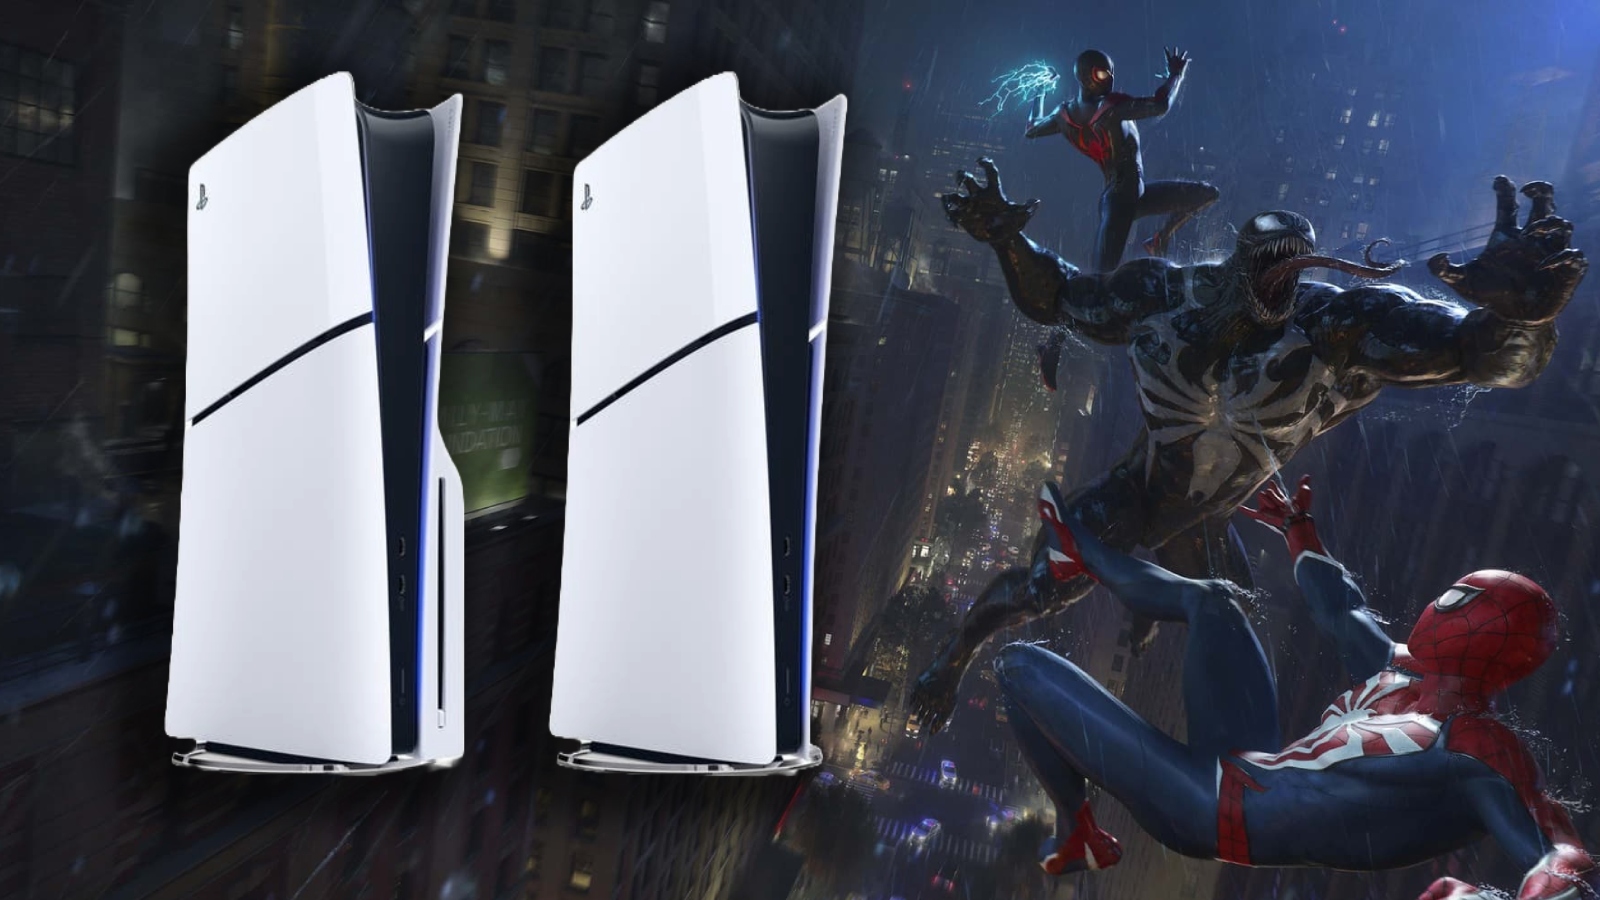 PS5 Slim: Data de lançamento e bundle de Spider-Man 2 vazam